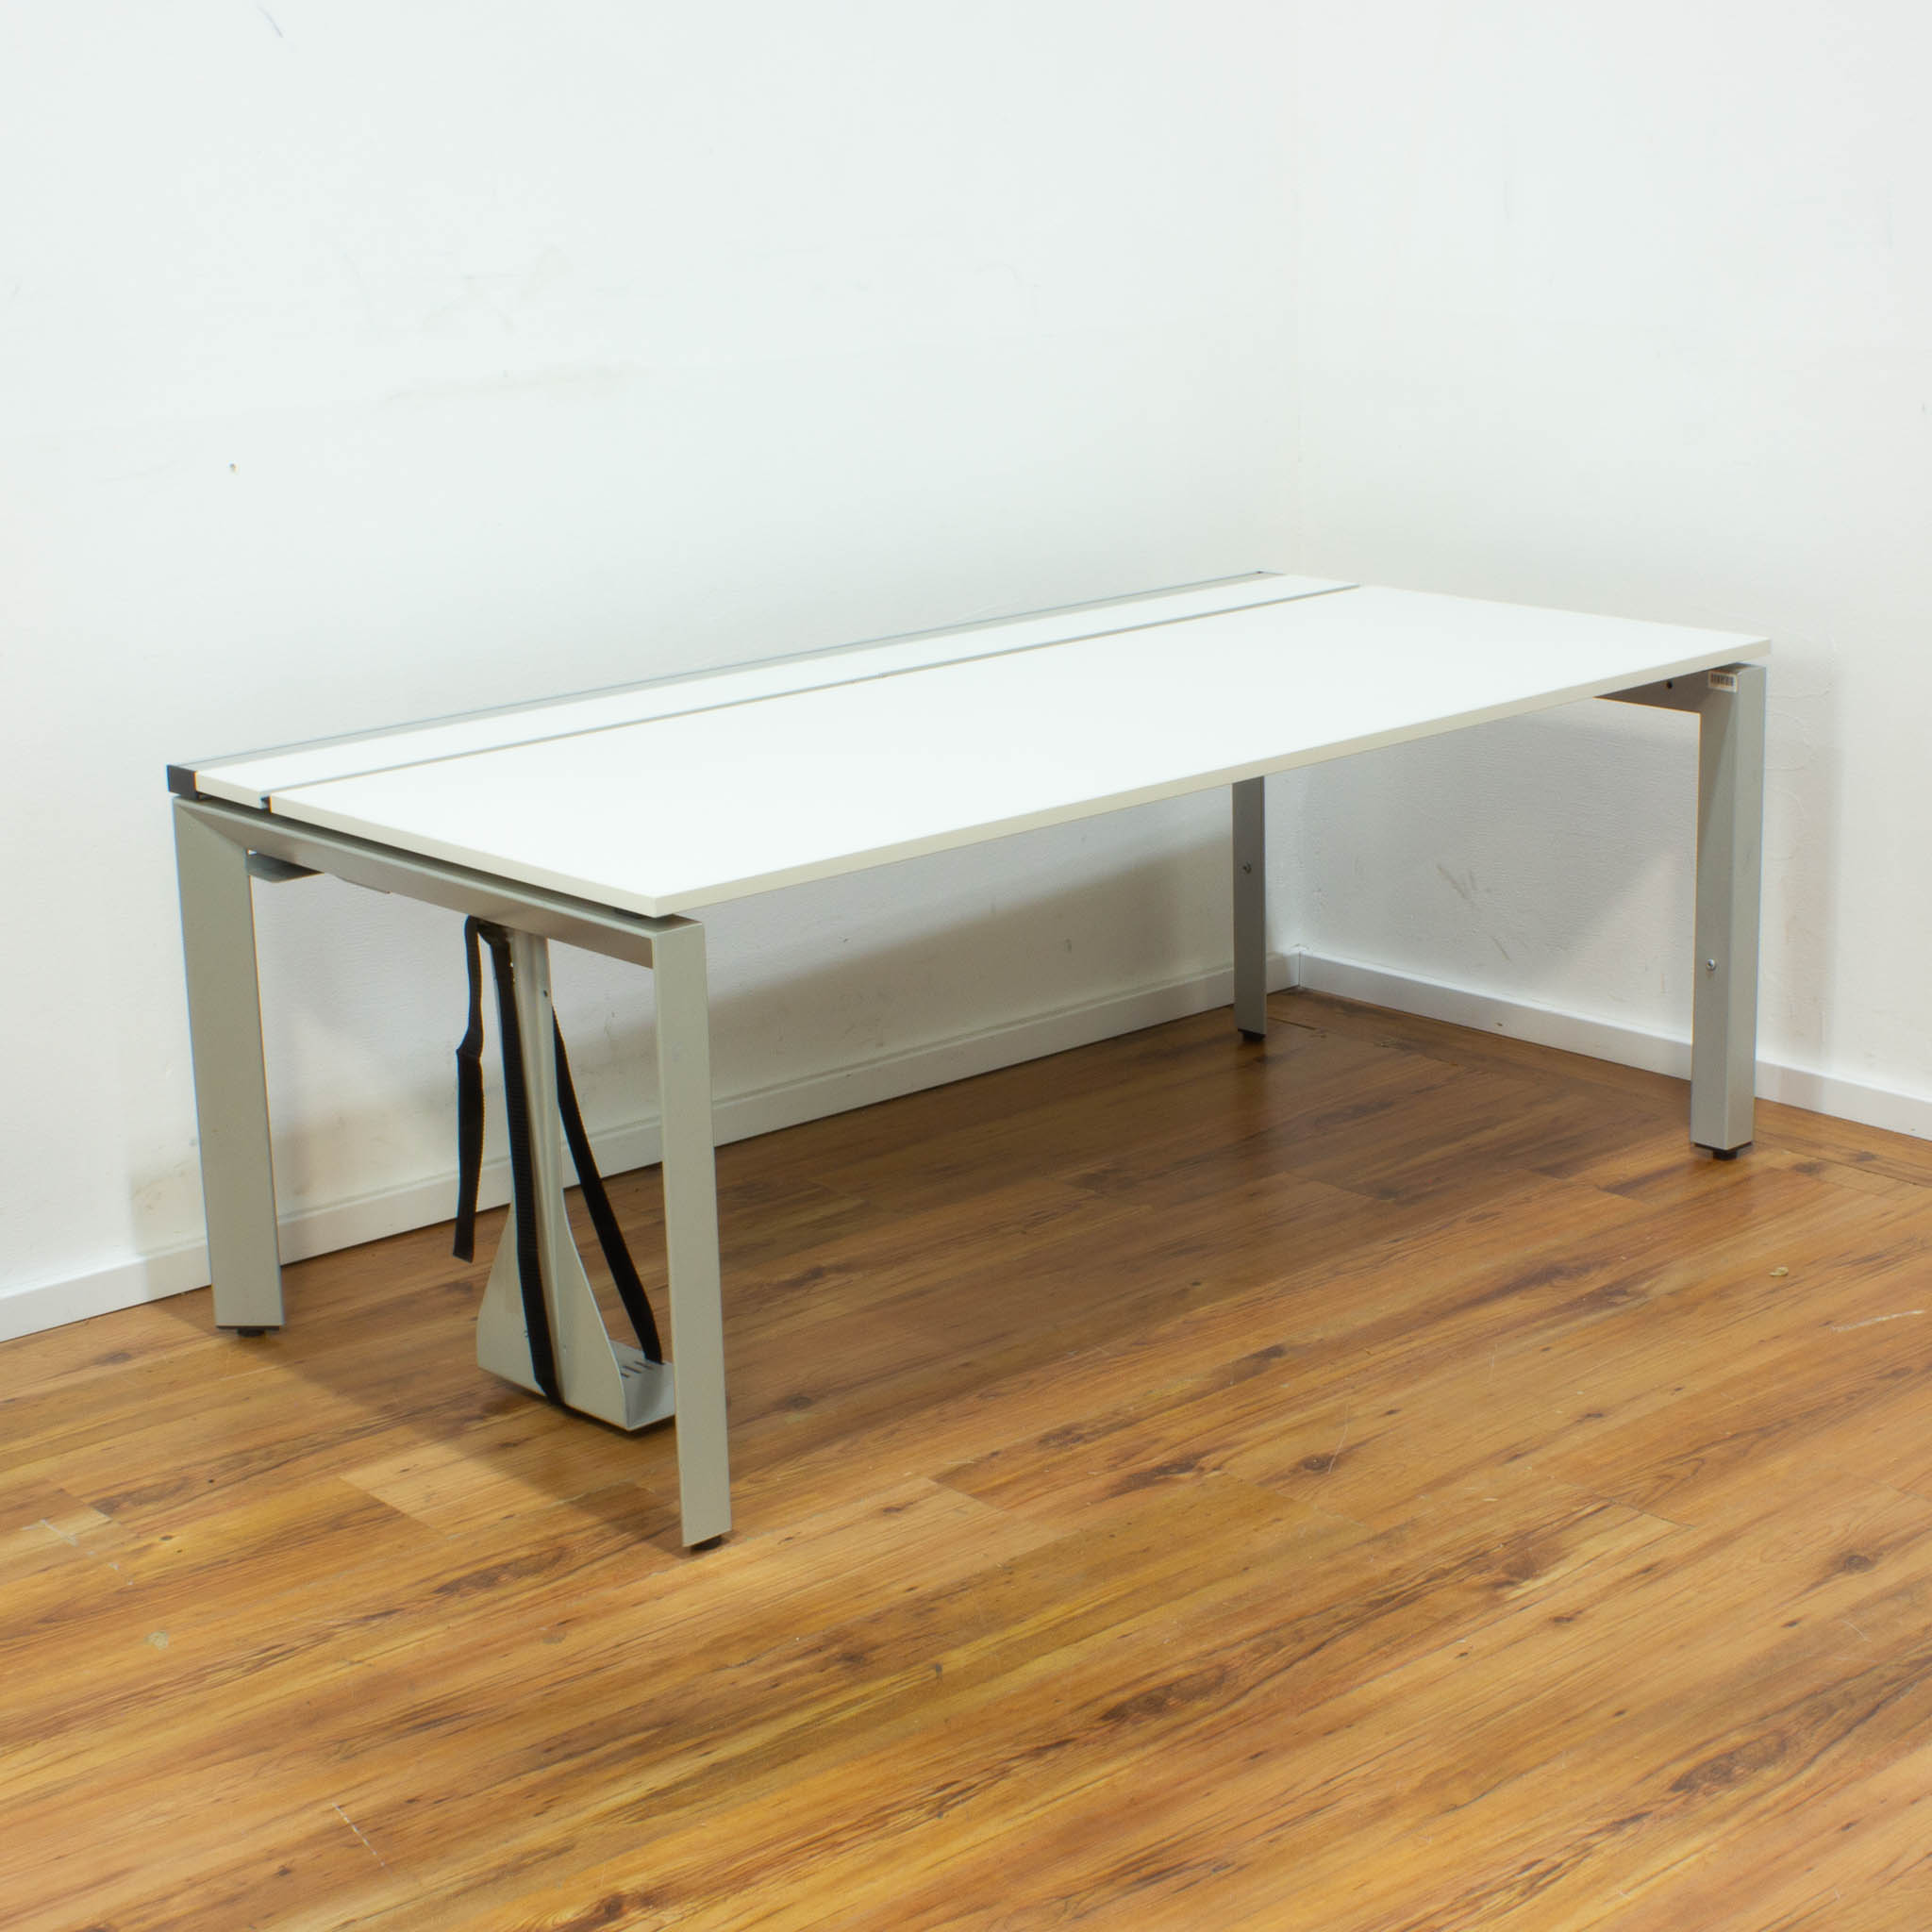 Steelcase Schreibtisch - 160 x 80 cm - Platte lichtgrau - mit Kabelkanal